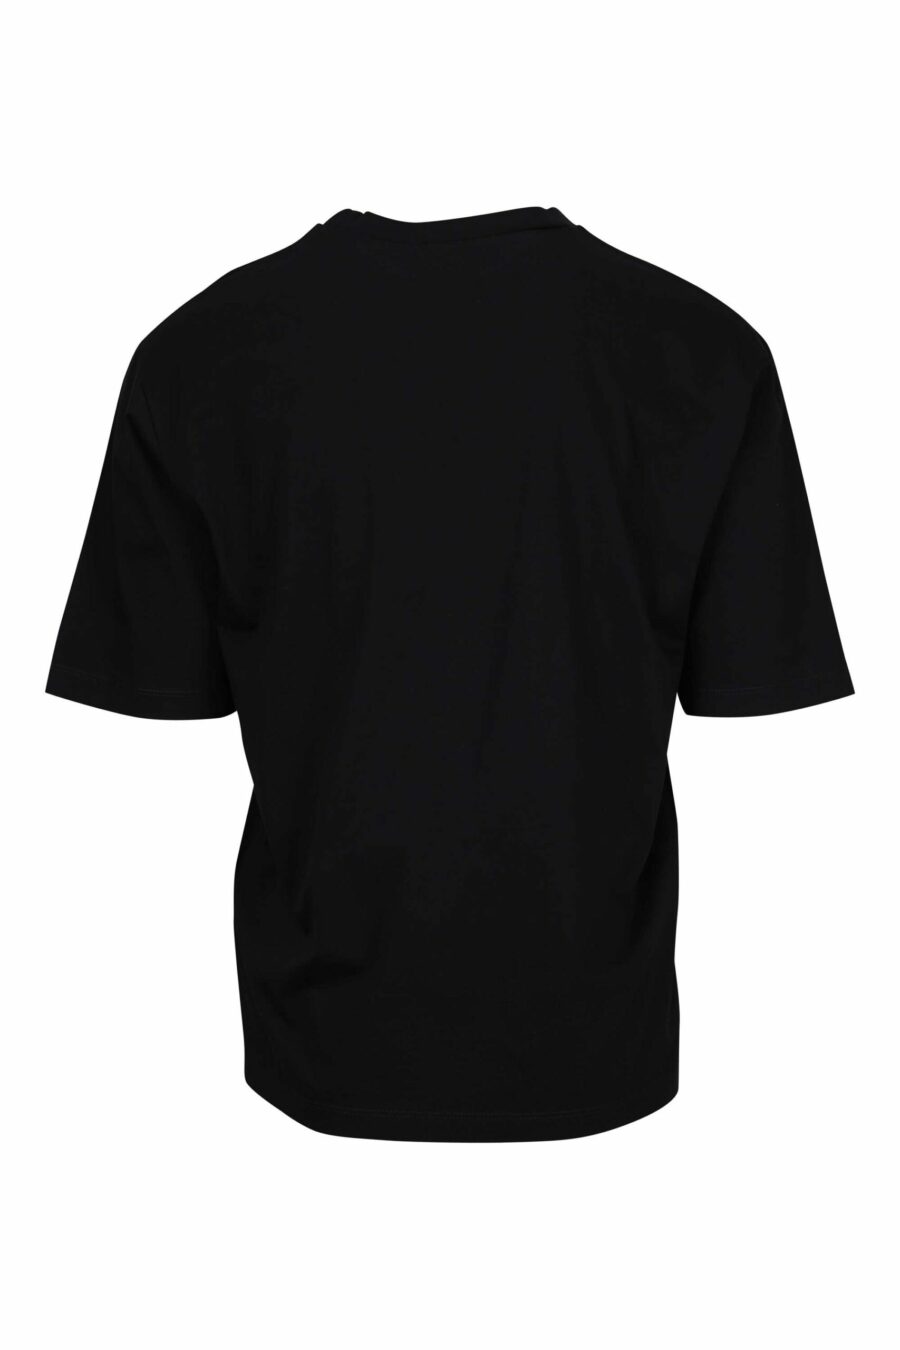 T-shirt preta de tamanho grande com maxilogo "ícone" esbatido verde néon - 8054148359669 1 à escala